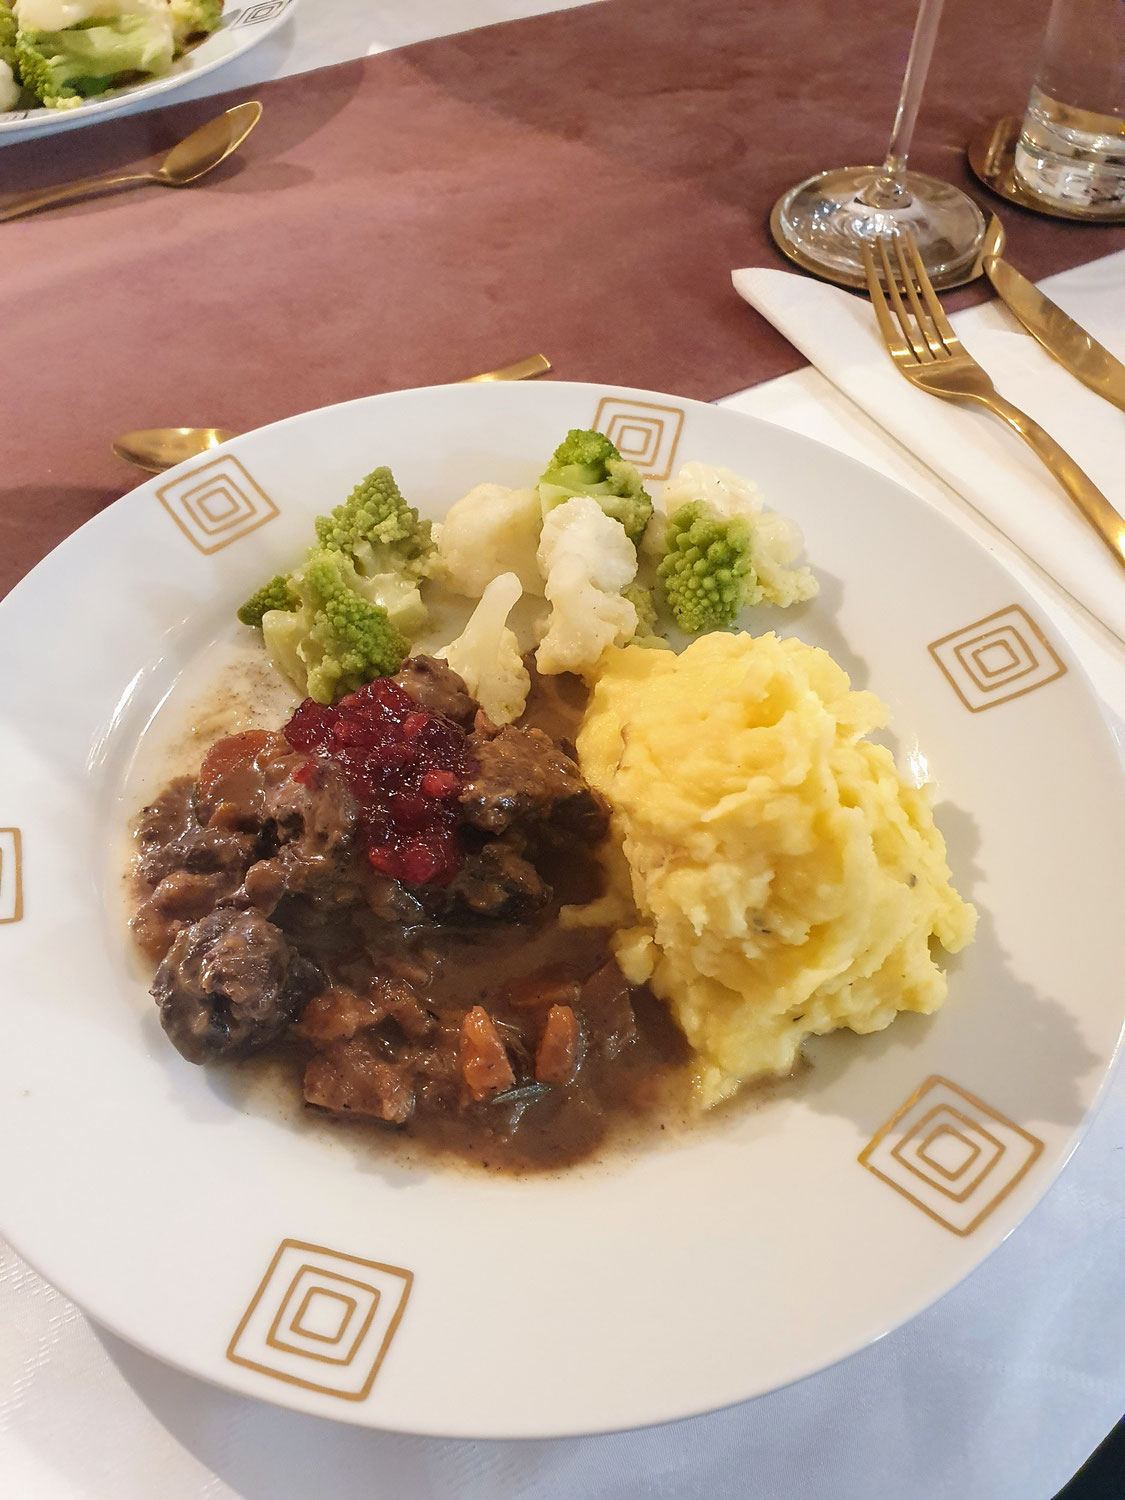 Hirschragout mit Kartoffel-Sellerie Püree und Röschen-Mischung